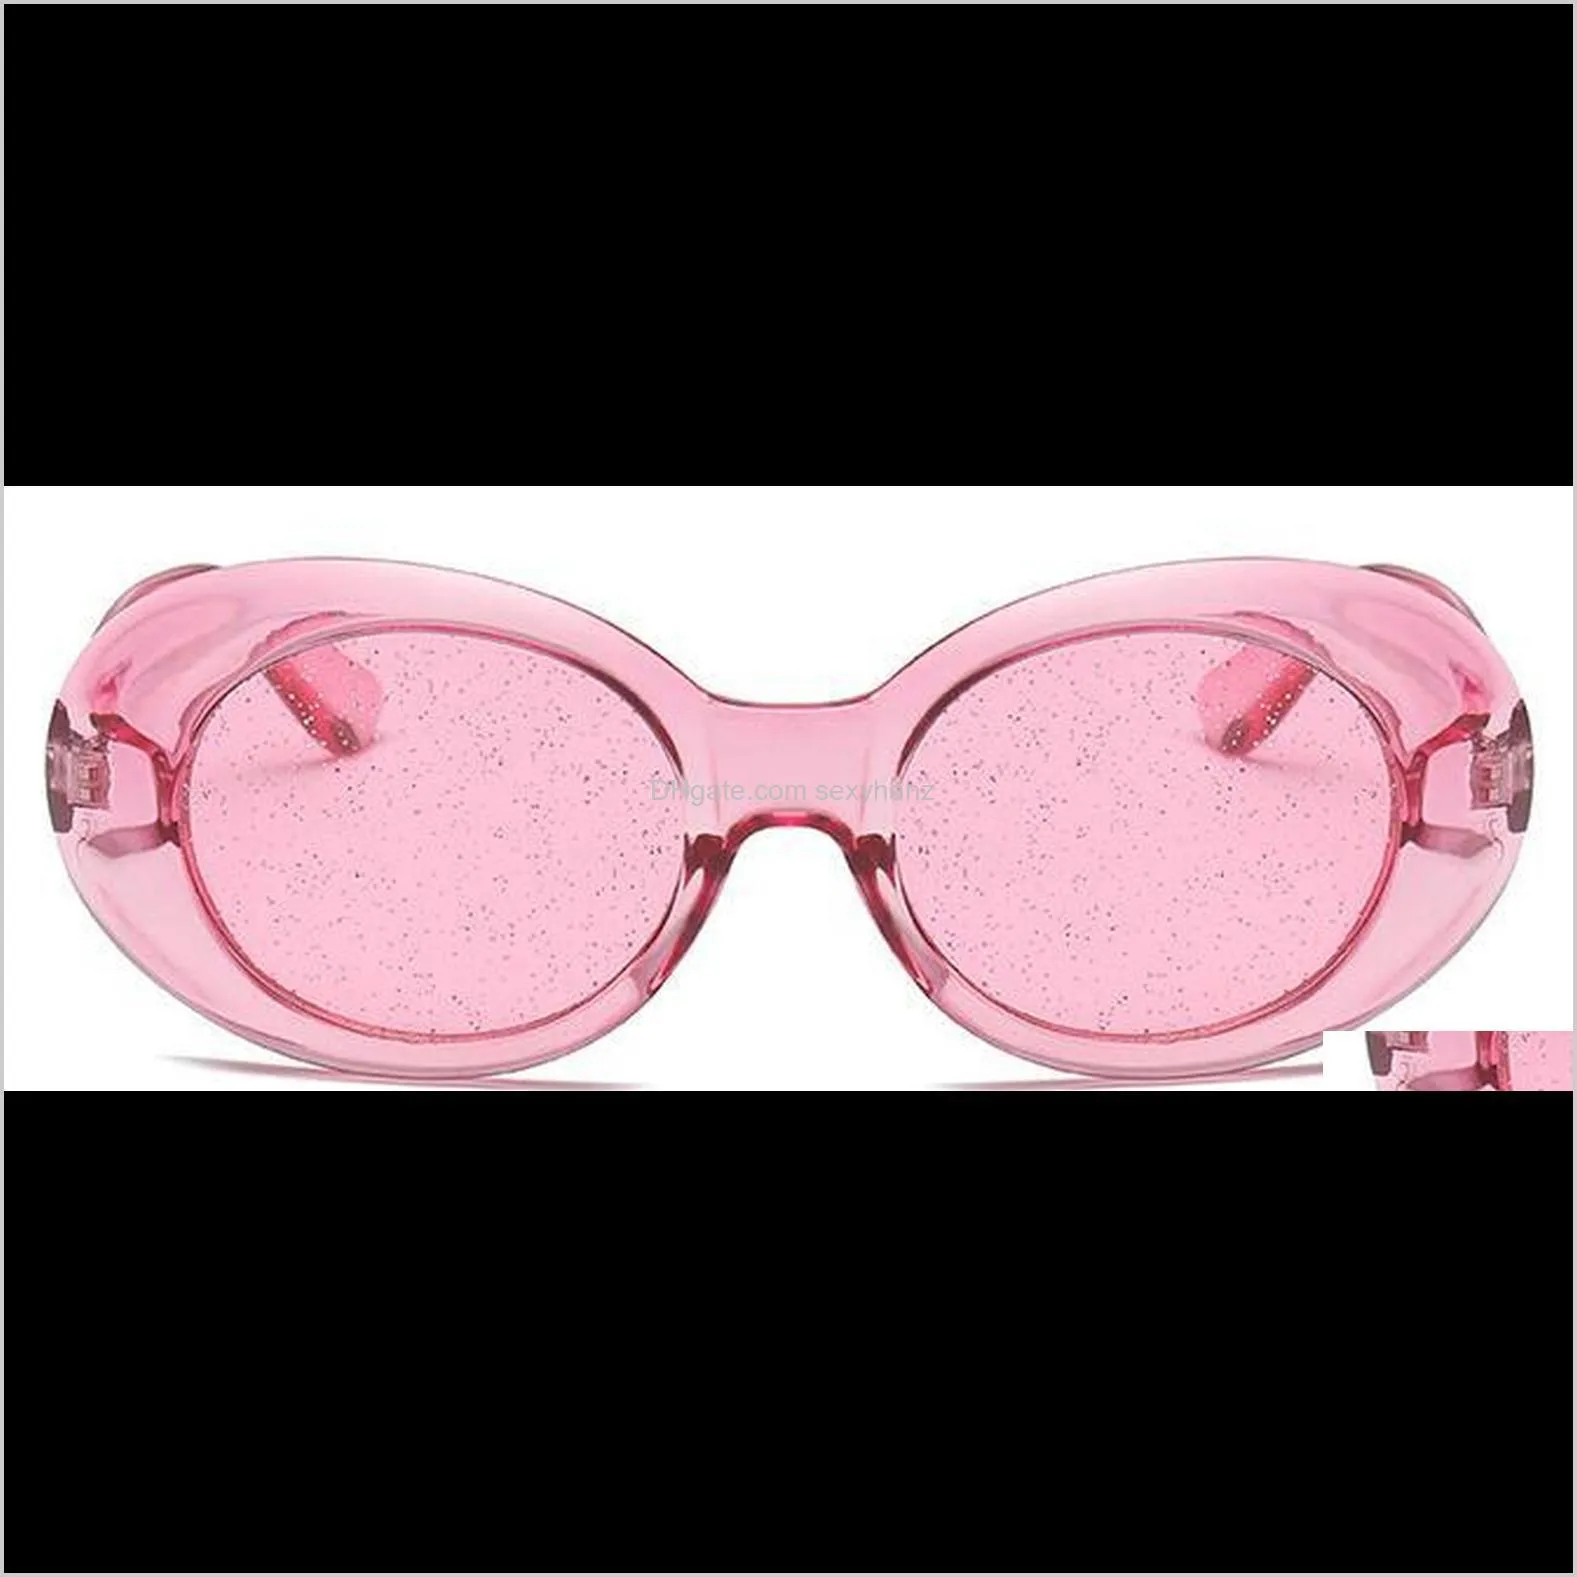 2020 Oval Sunglasses Women Men Oversized Sun Glasses Glitter Lenses Candy Colorful Crystal Frame Sunglass UV400